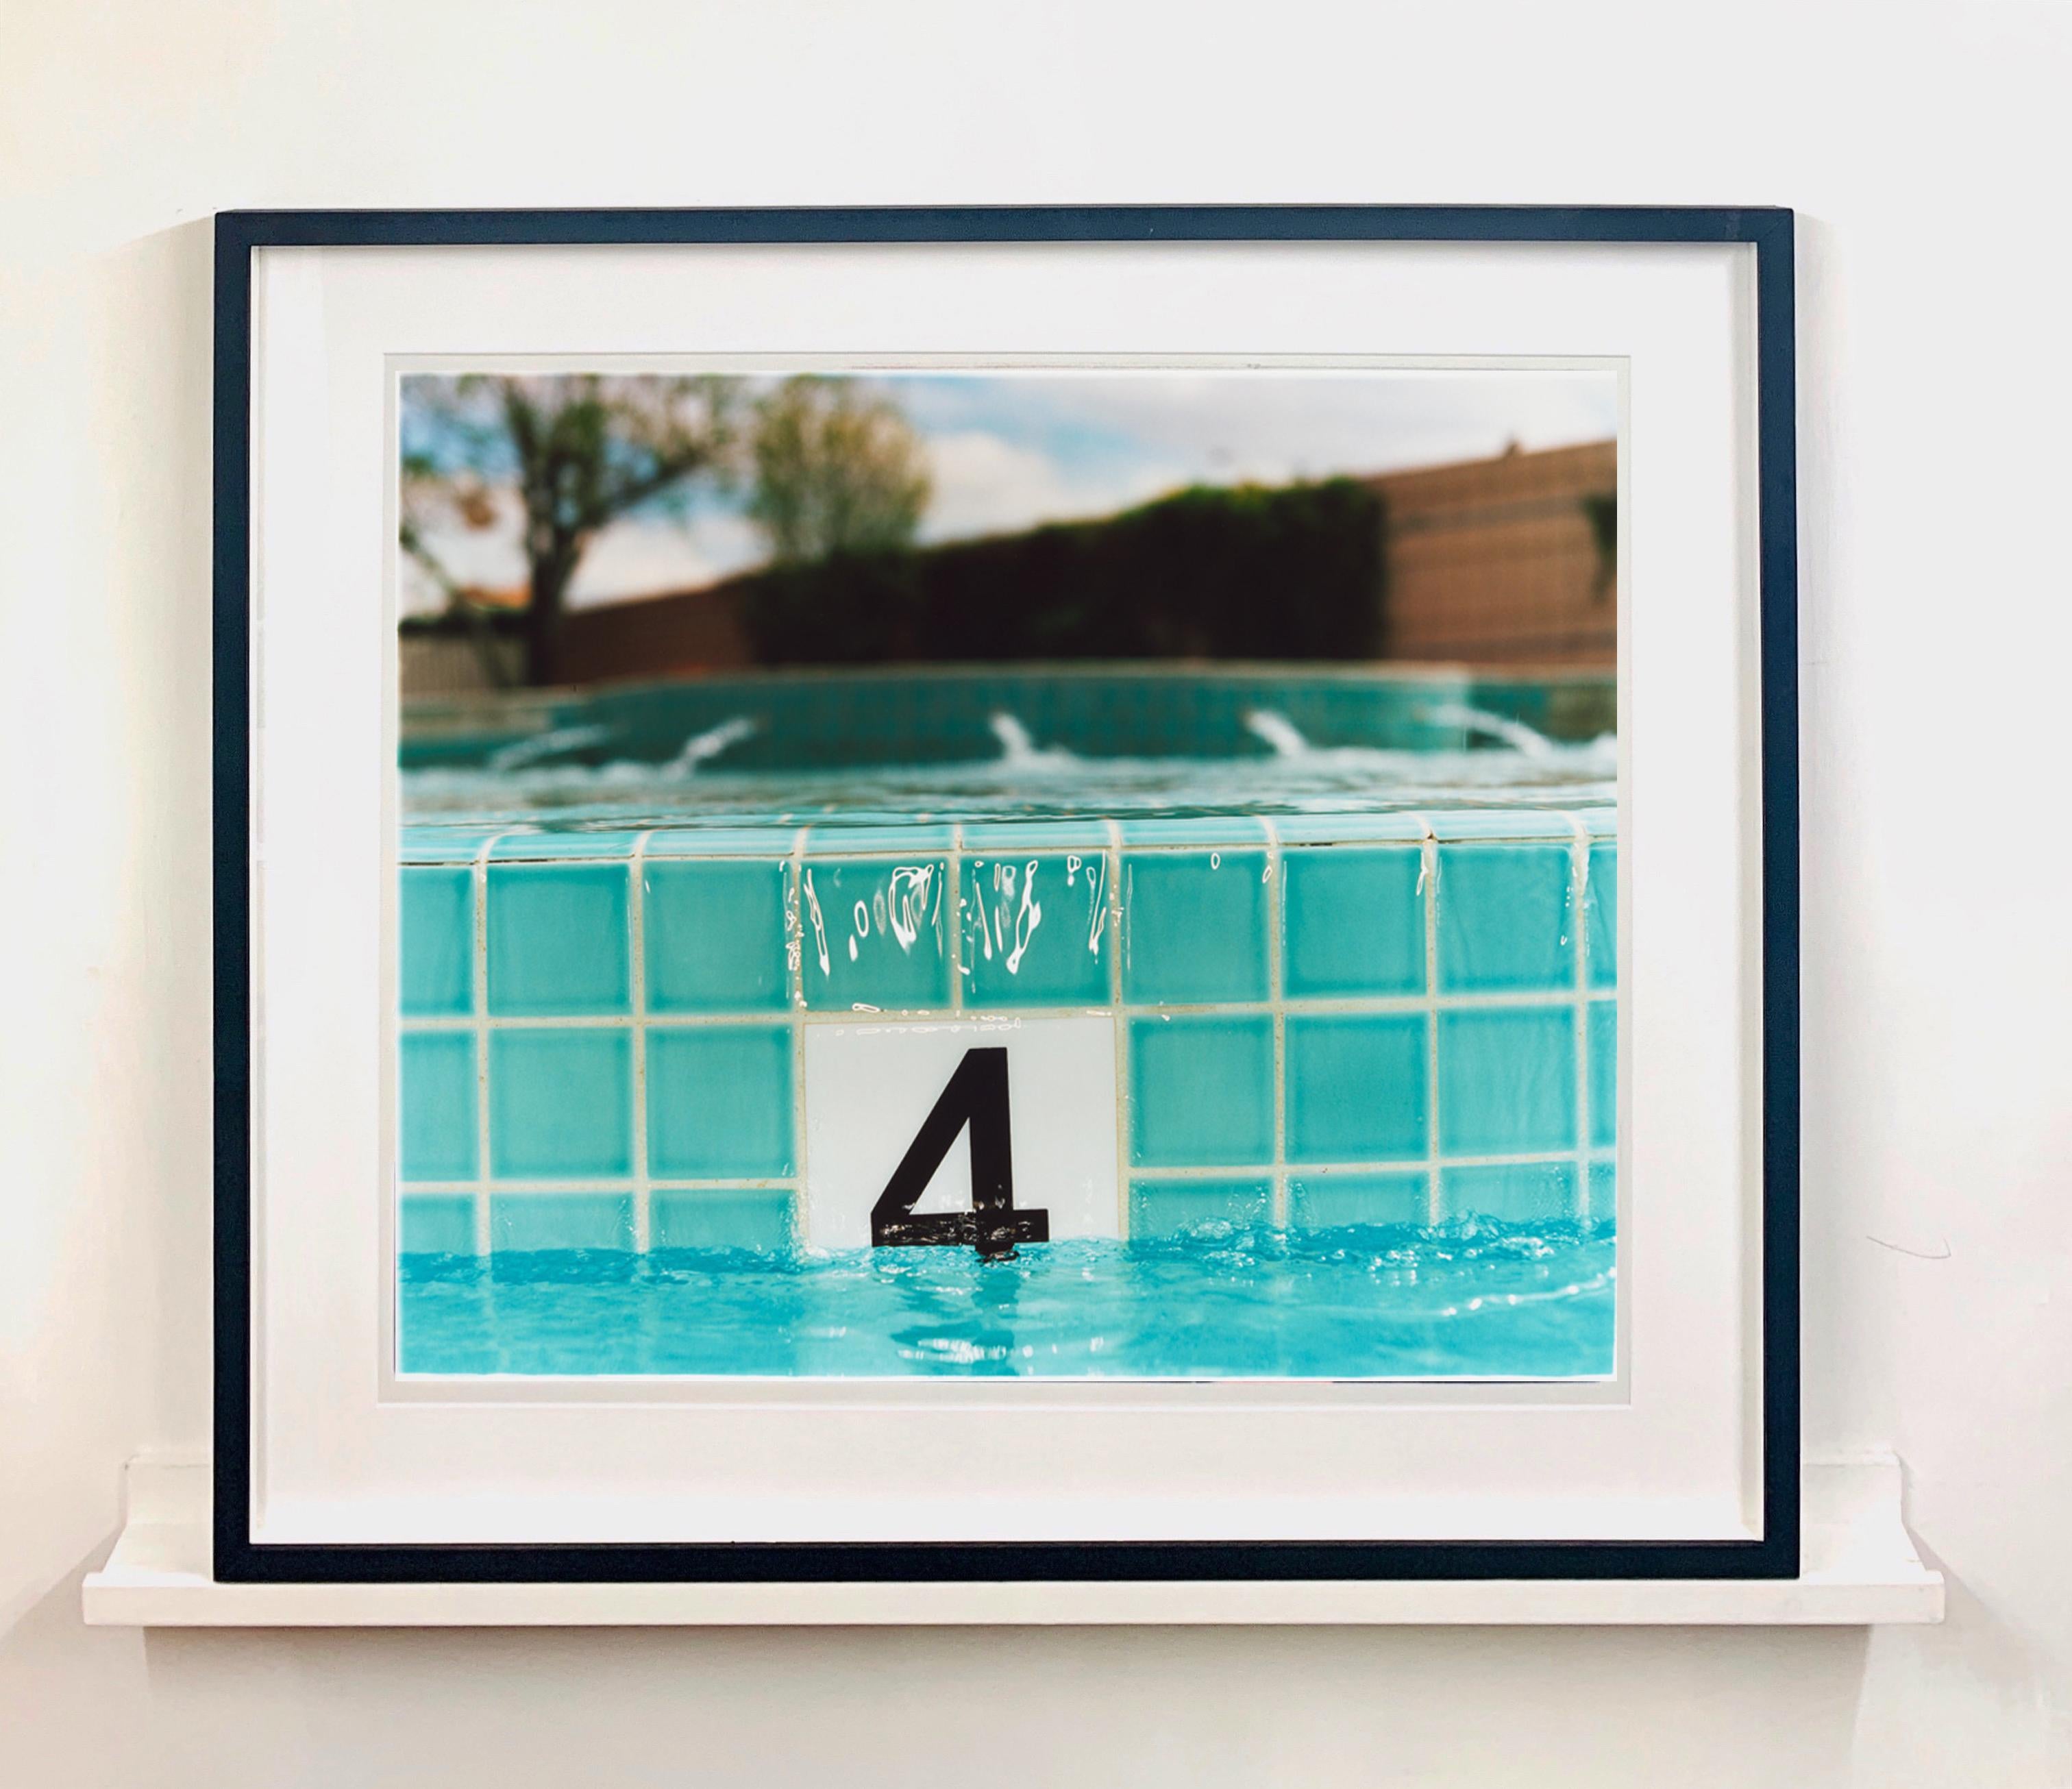 Quatre pieds, piscine du Maroc, Las Vegas, Nevada - Photographie couleur américaine - Print de Richard Heeps